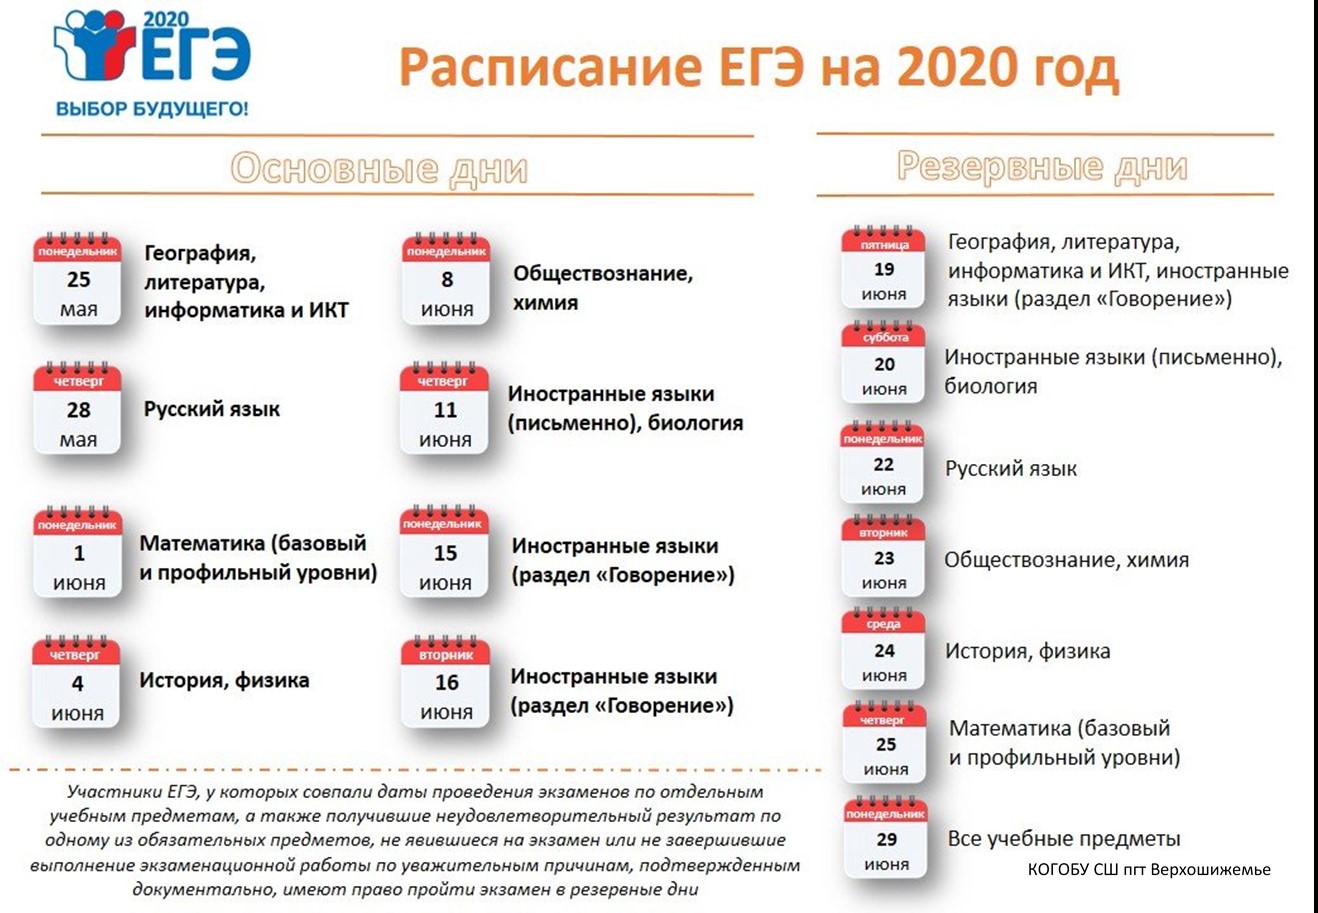 Егэ 2020 тест. ЕГЭ 2020 даты проведения. Сроки проведения единого государственного экзамена в 2020 году. ЕГЭ 2020 расписание экзаменов. Резервные даты ЕГЭ 2020.